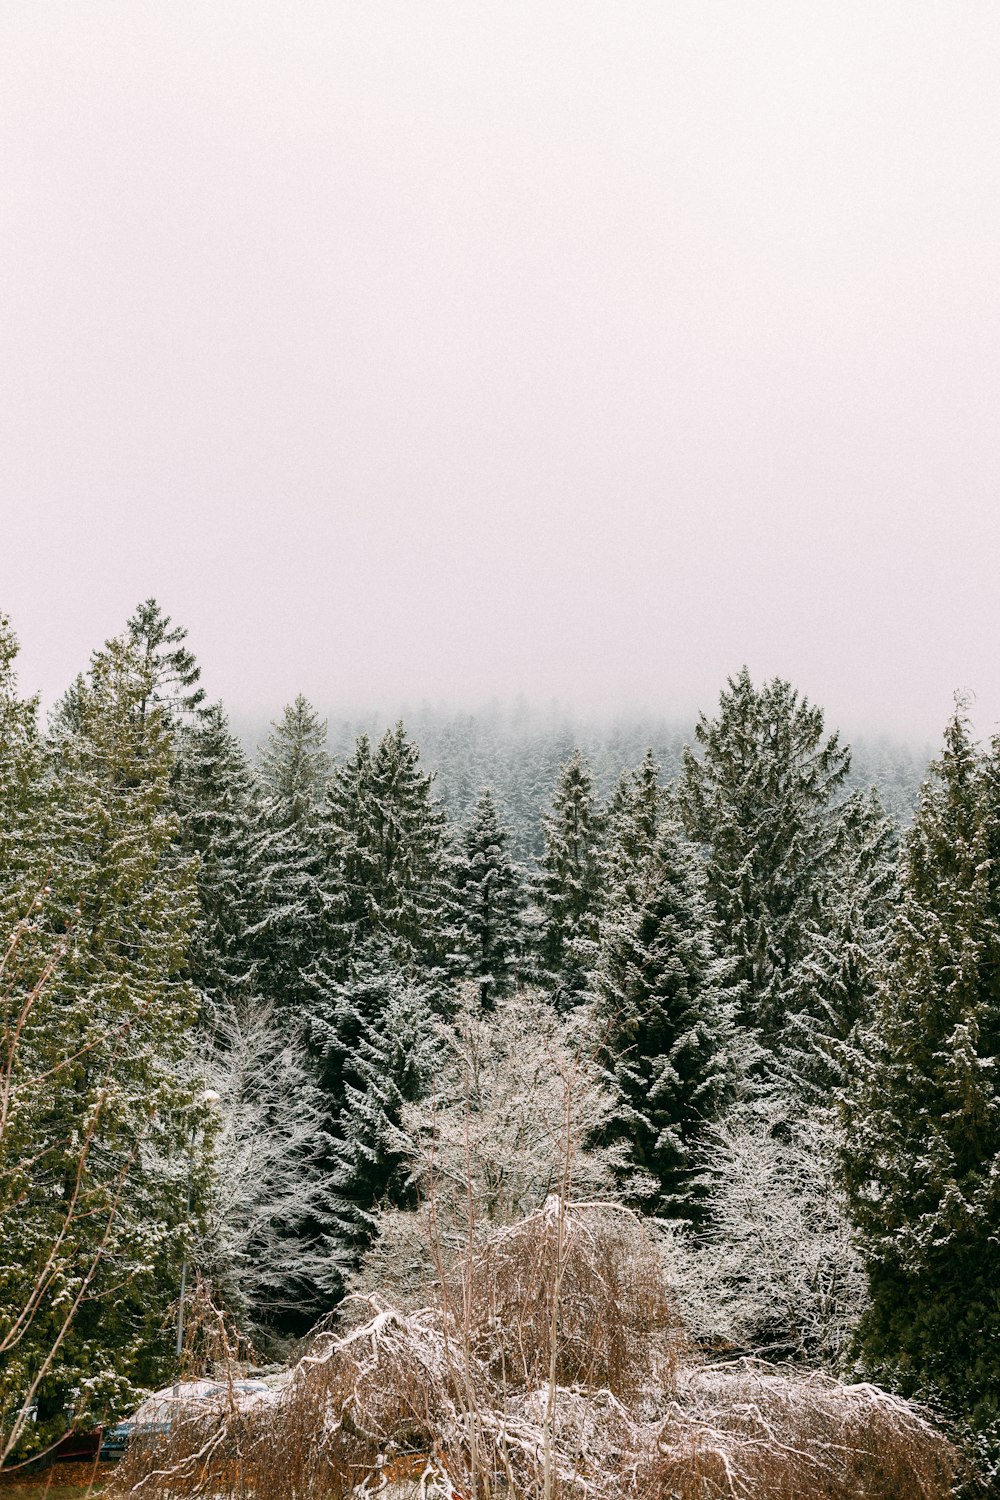 um grupo de árvores cobertas de neve ao lado de uma floresta